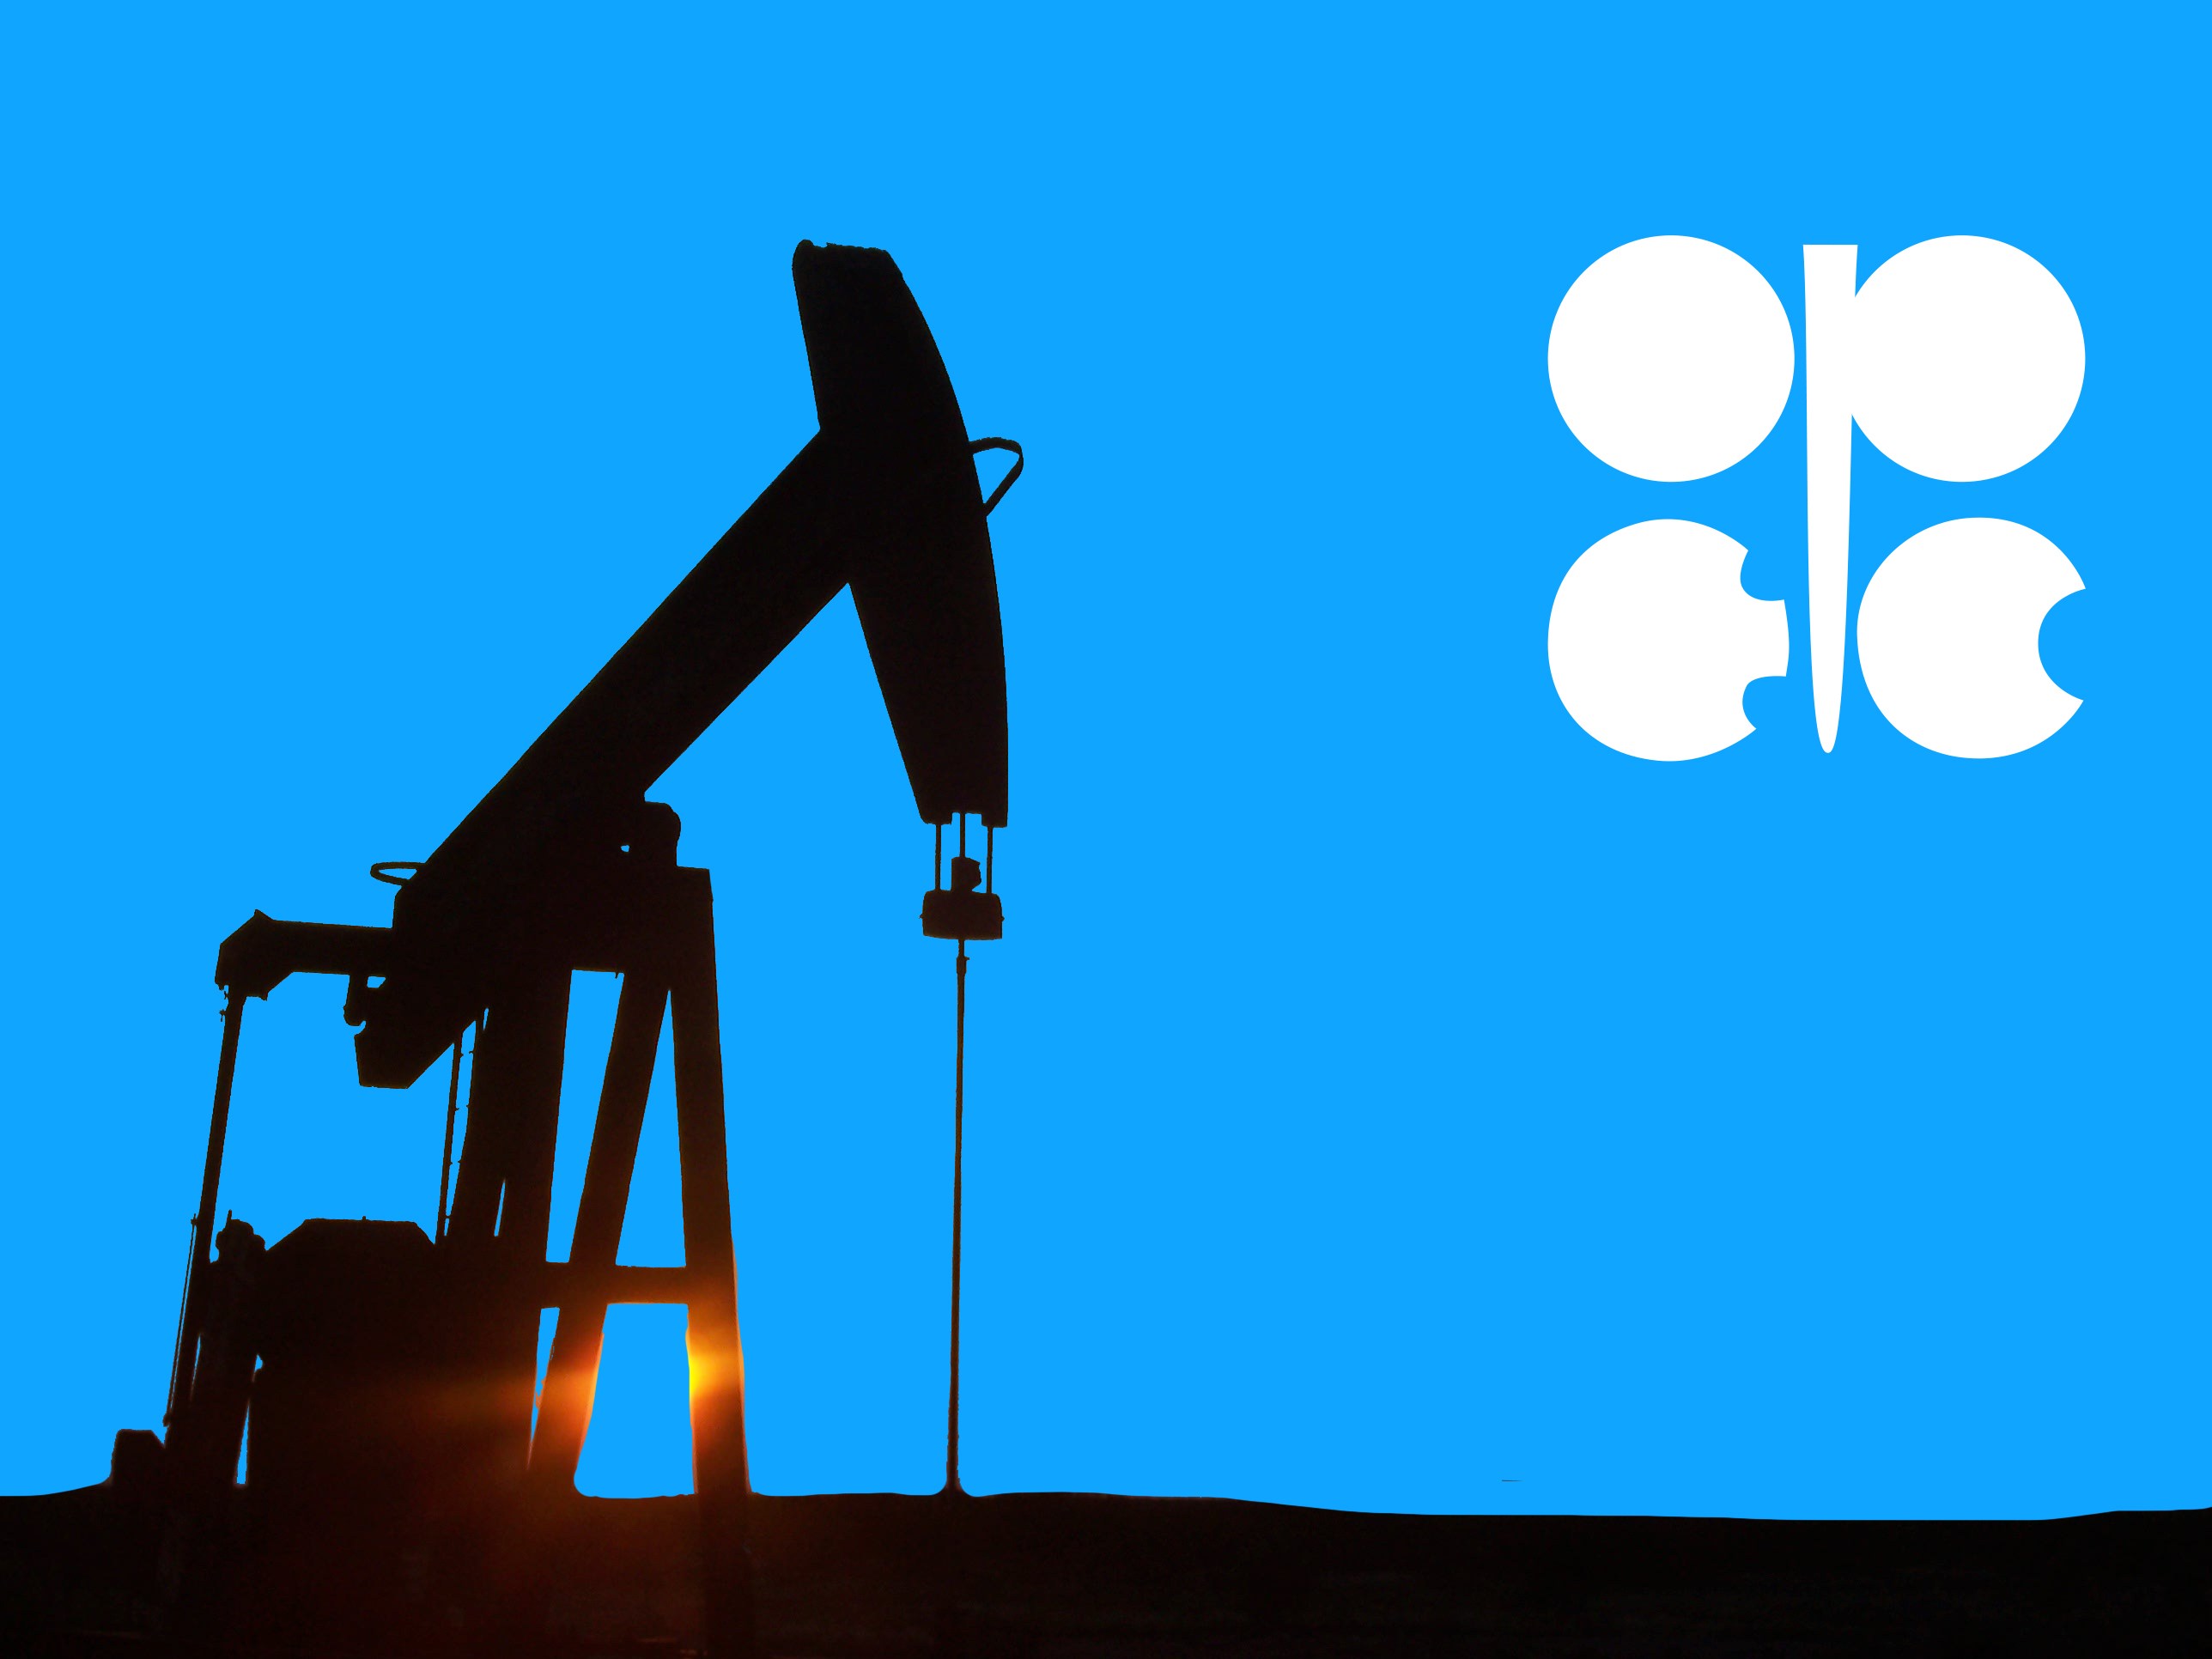 تصویر از احتمال توافق کاهش تولید قیمت نفت را افزایش داد